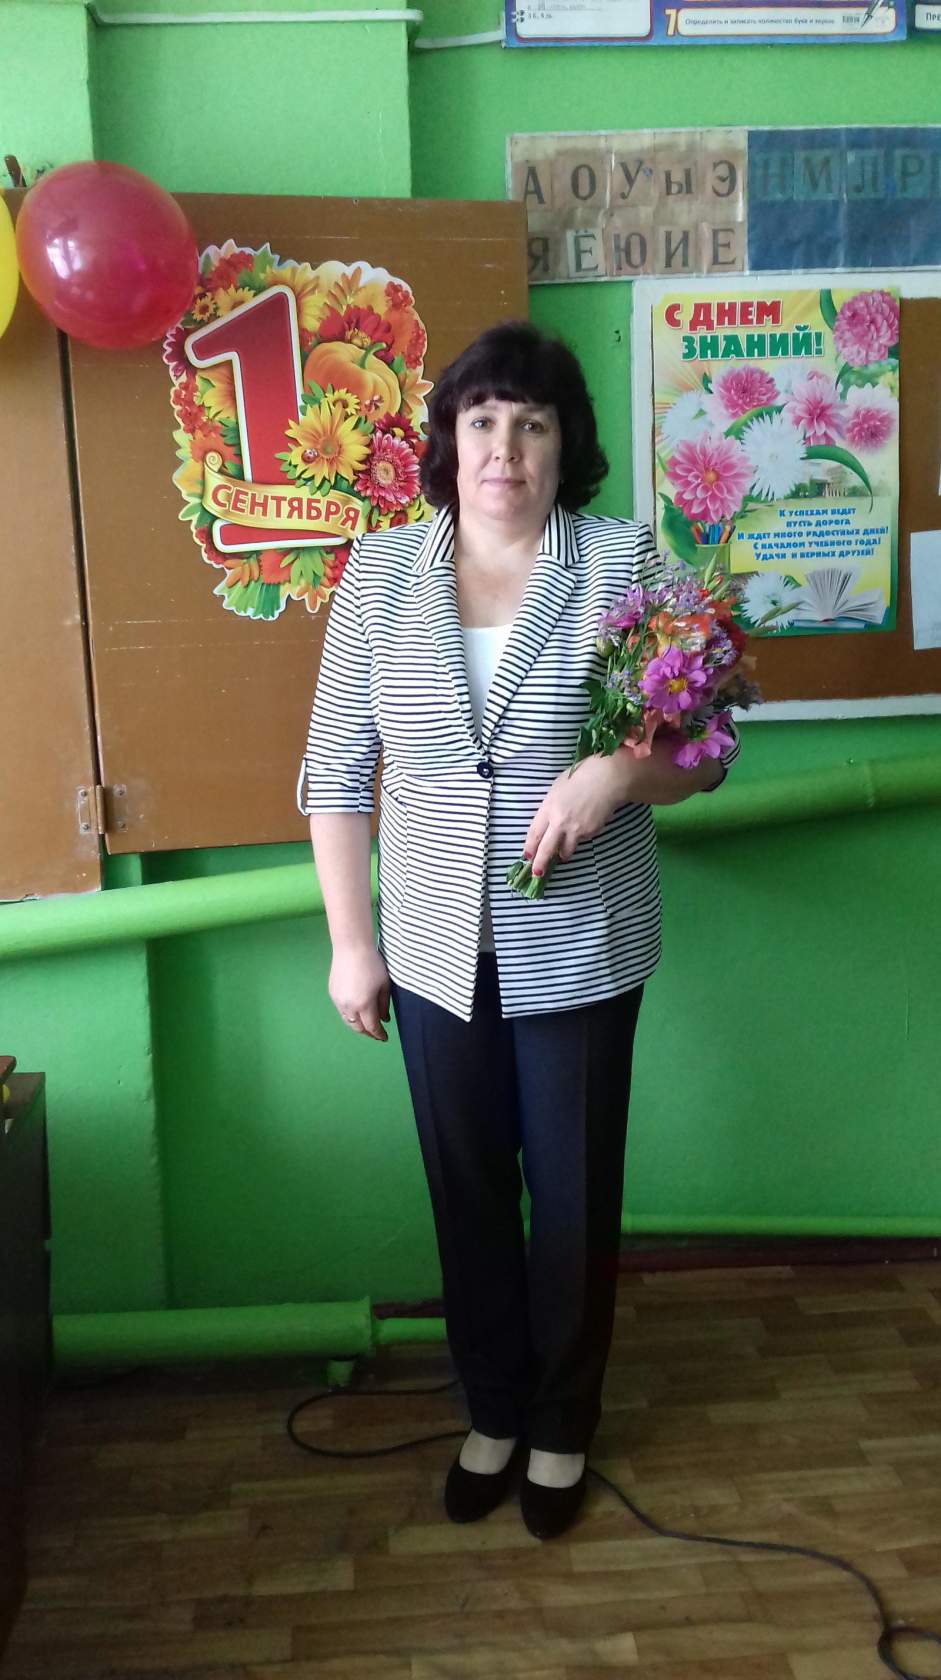 Учительницу из Омской области, оштрафованную за пикет, перевели к ее ученикам #Новости #Общество #Омск